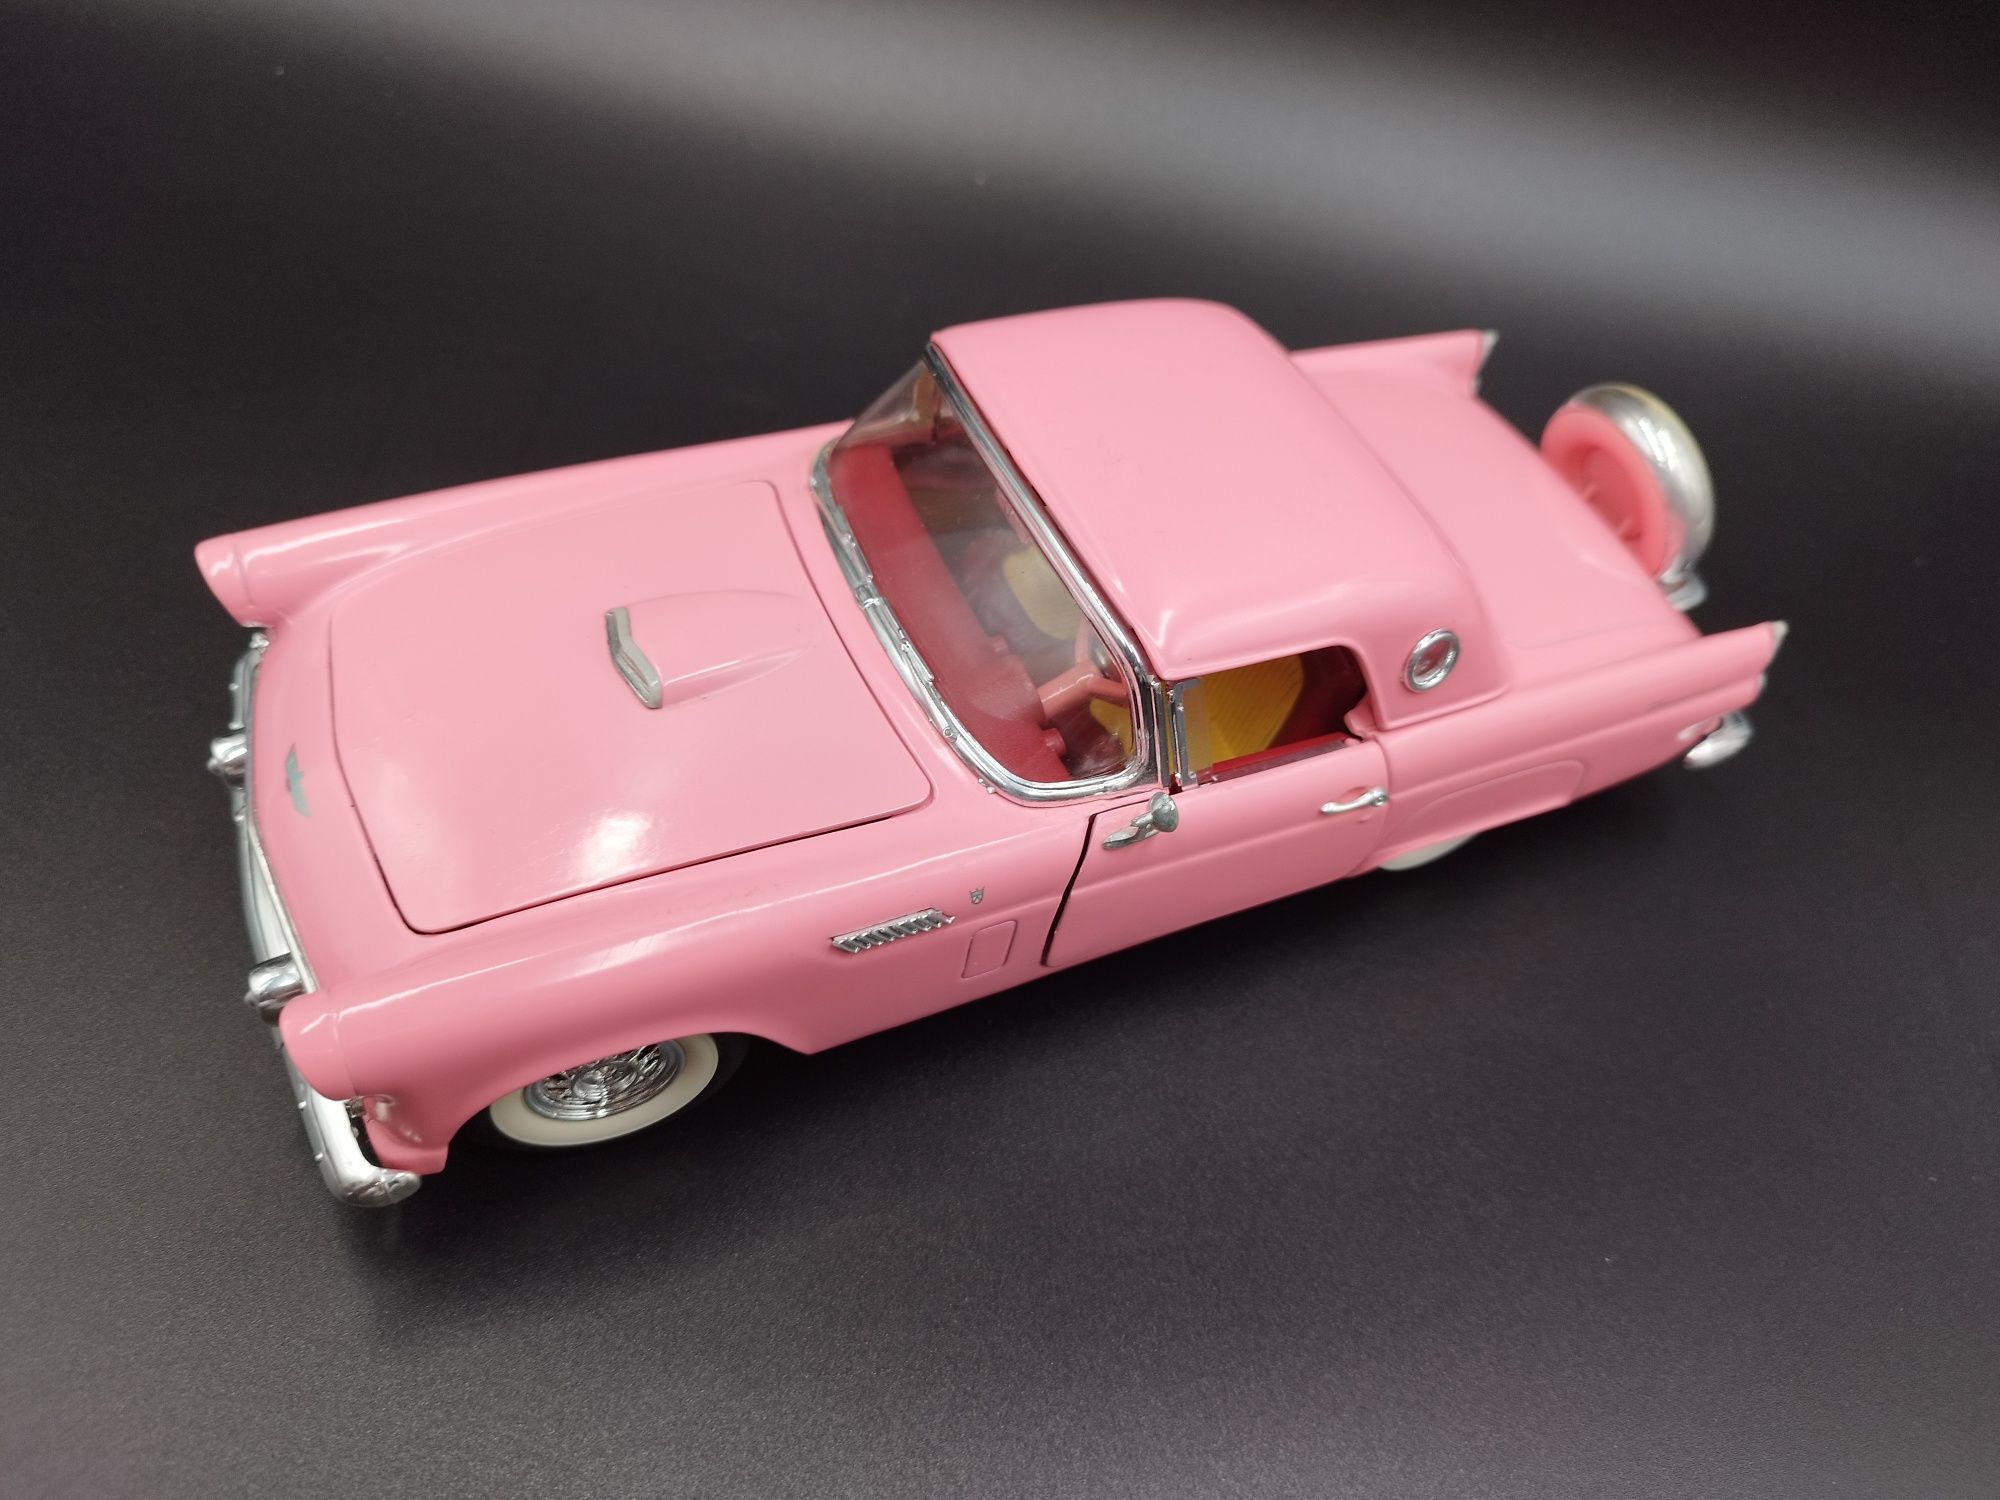 1:18 Revell 1956 Ford Thunderbird "Pink Dream" model